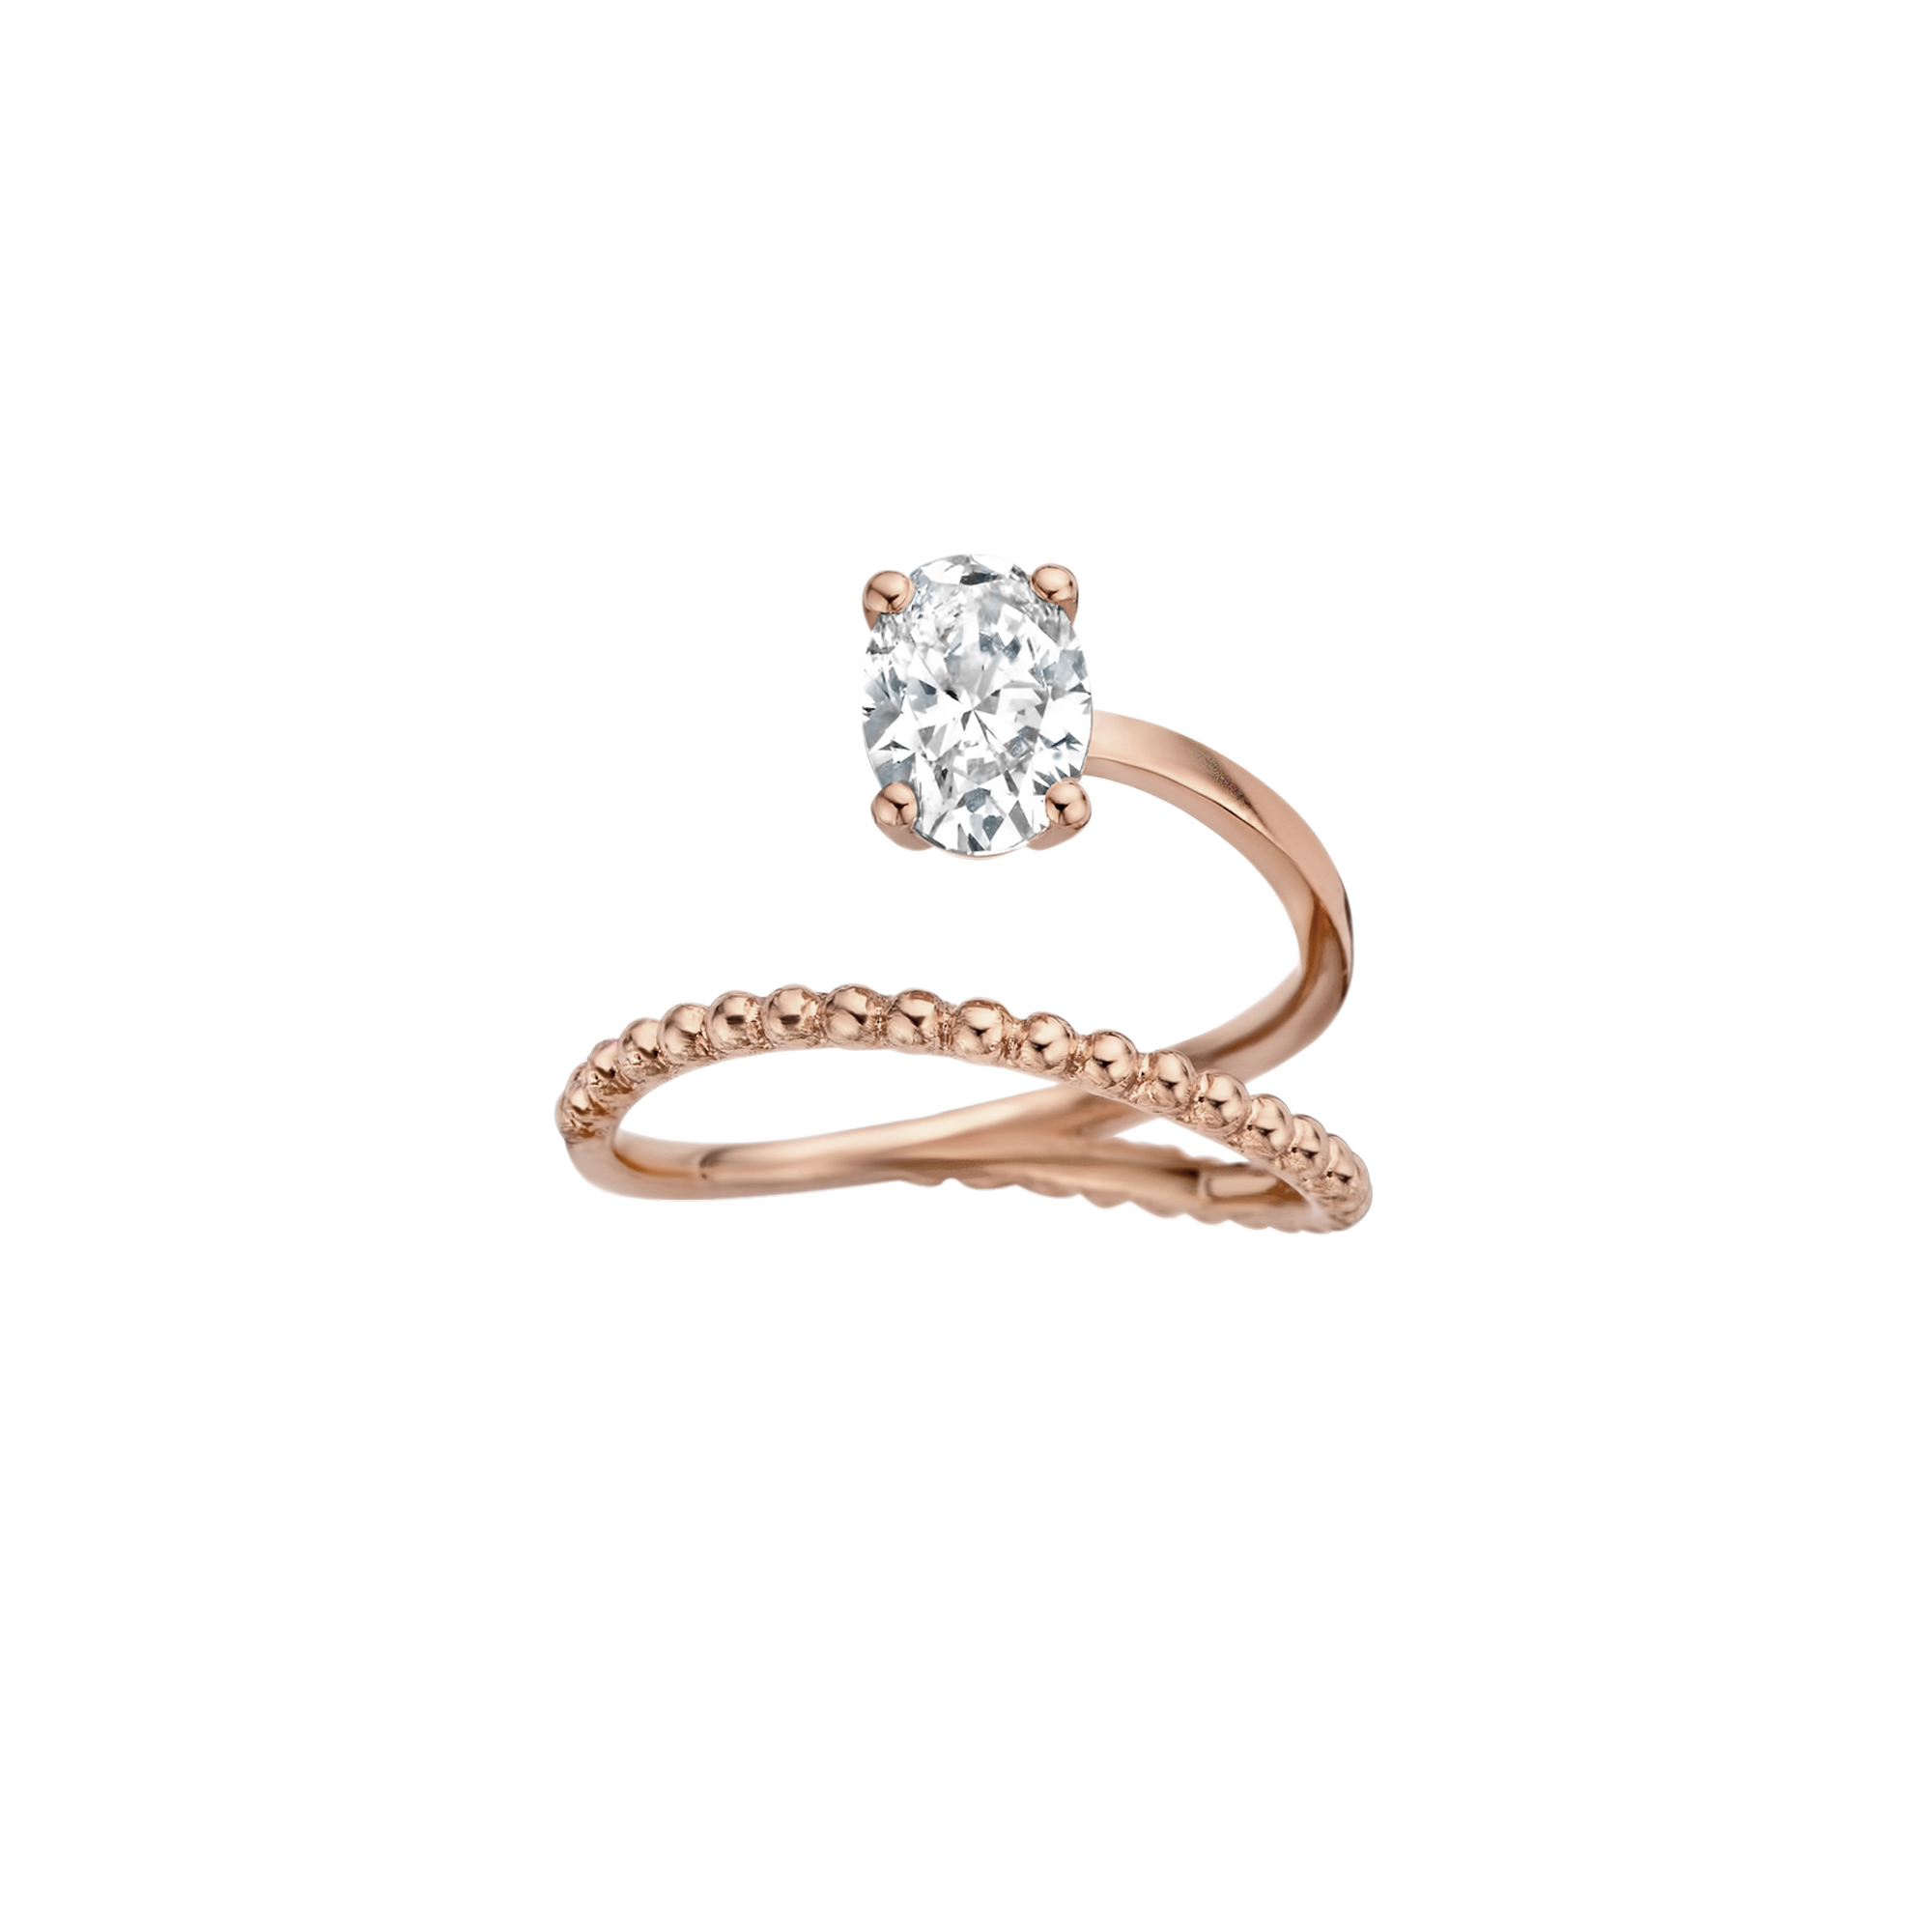 Bille engagement ring packshot - rose gold